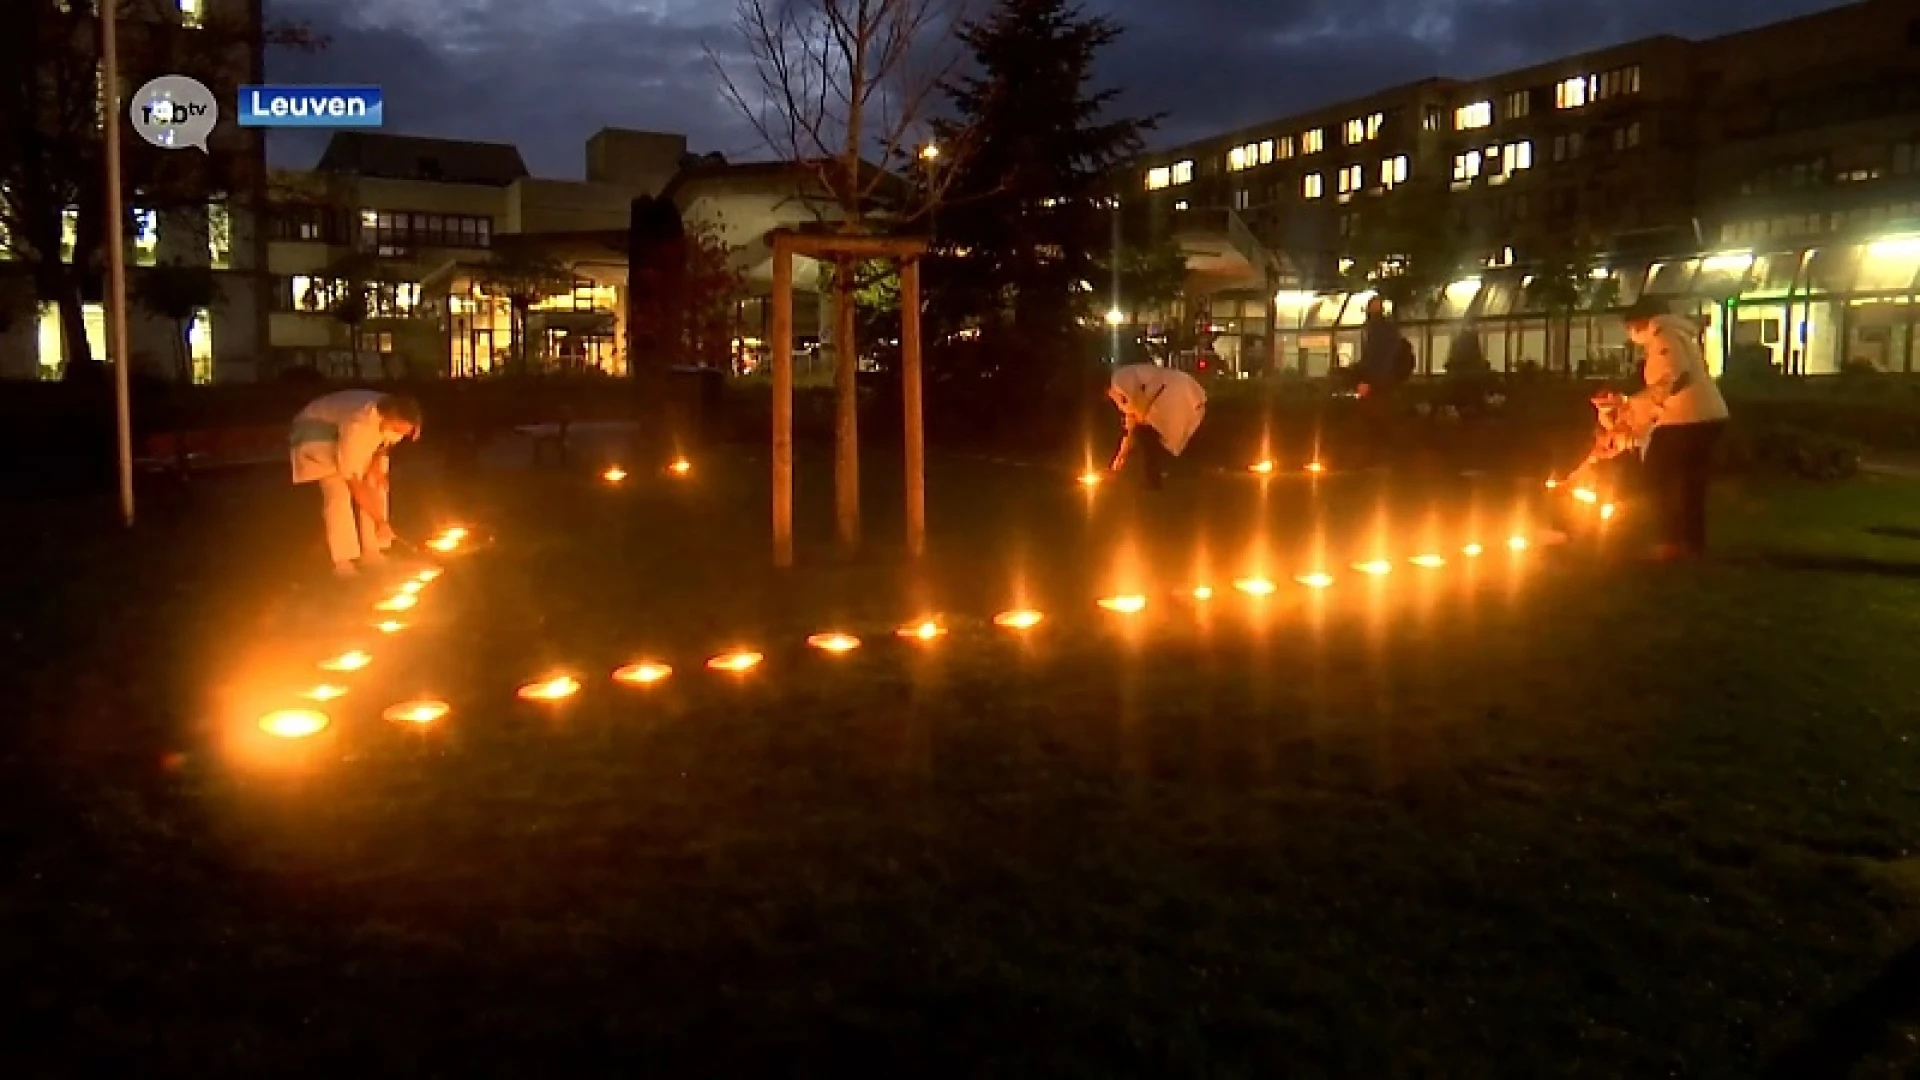 68 grote kaarsen maken groot hart aan ingang UZ Leuven